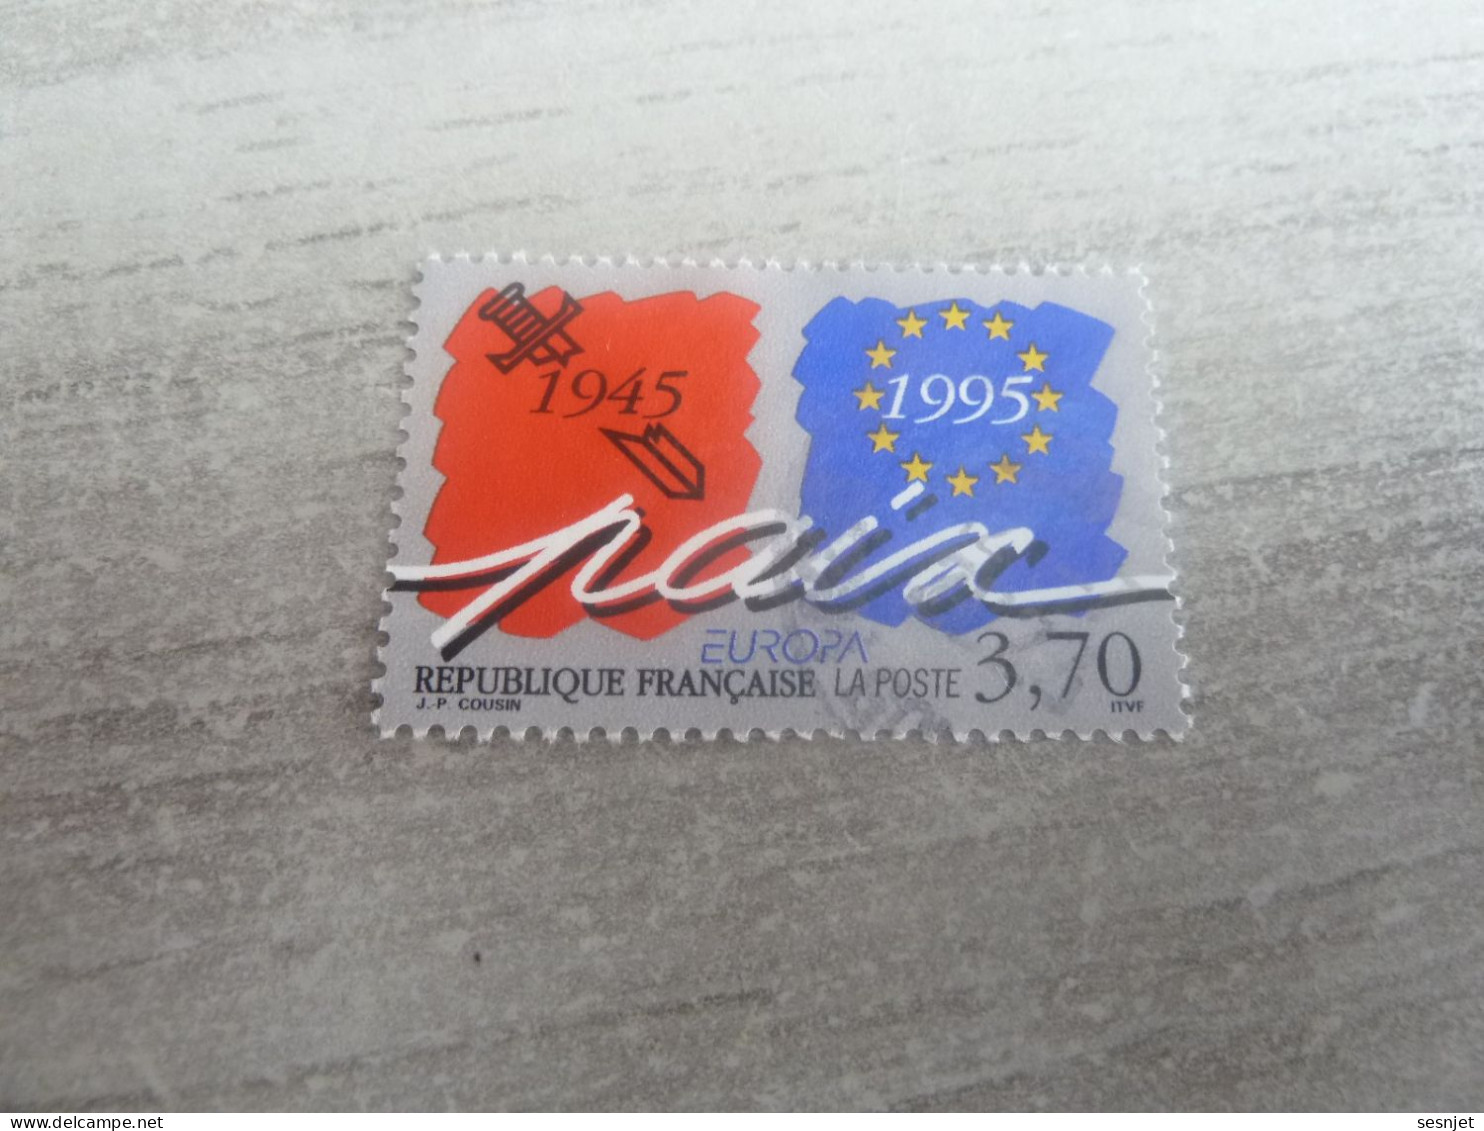 Europa - Paix Et Liberté - 3f.70 - Yt 2942 - Multicolore Sur Gris - Oblitéré - Année 1995 - - 1995